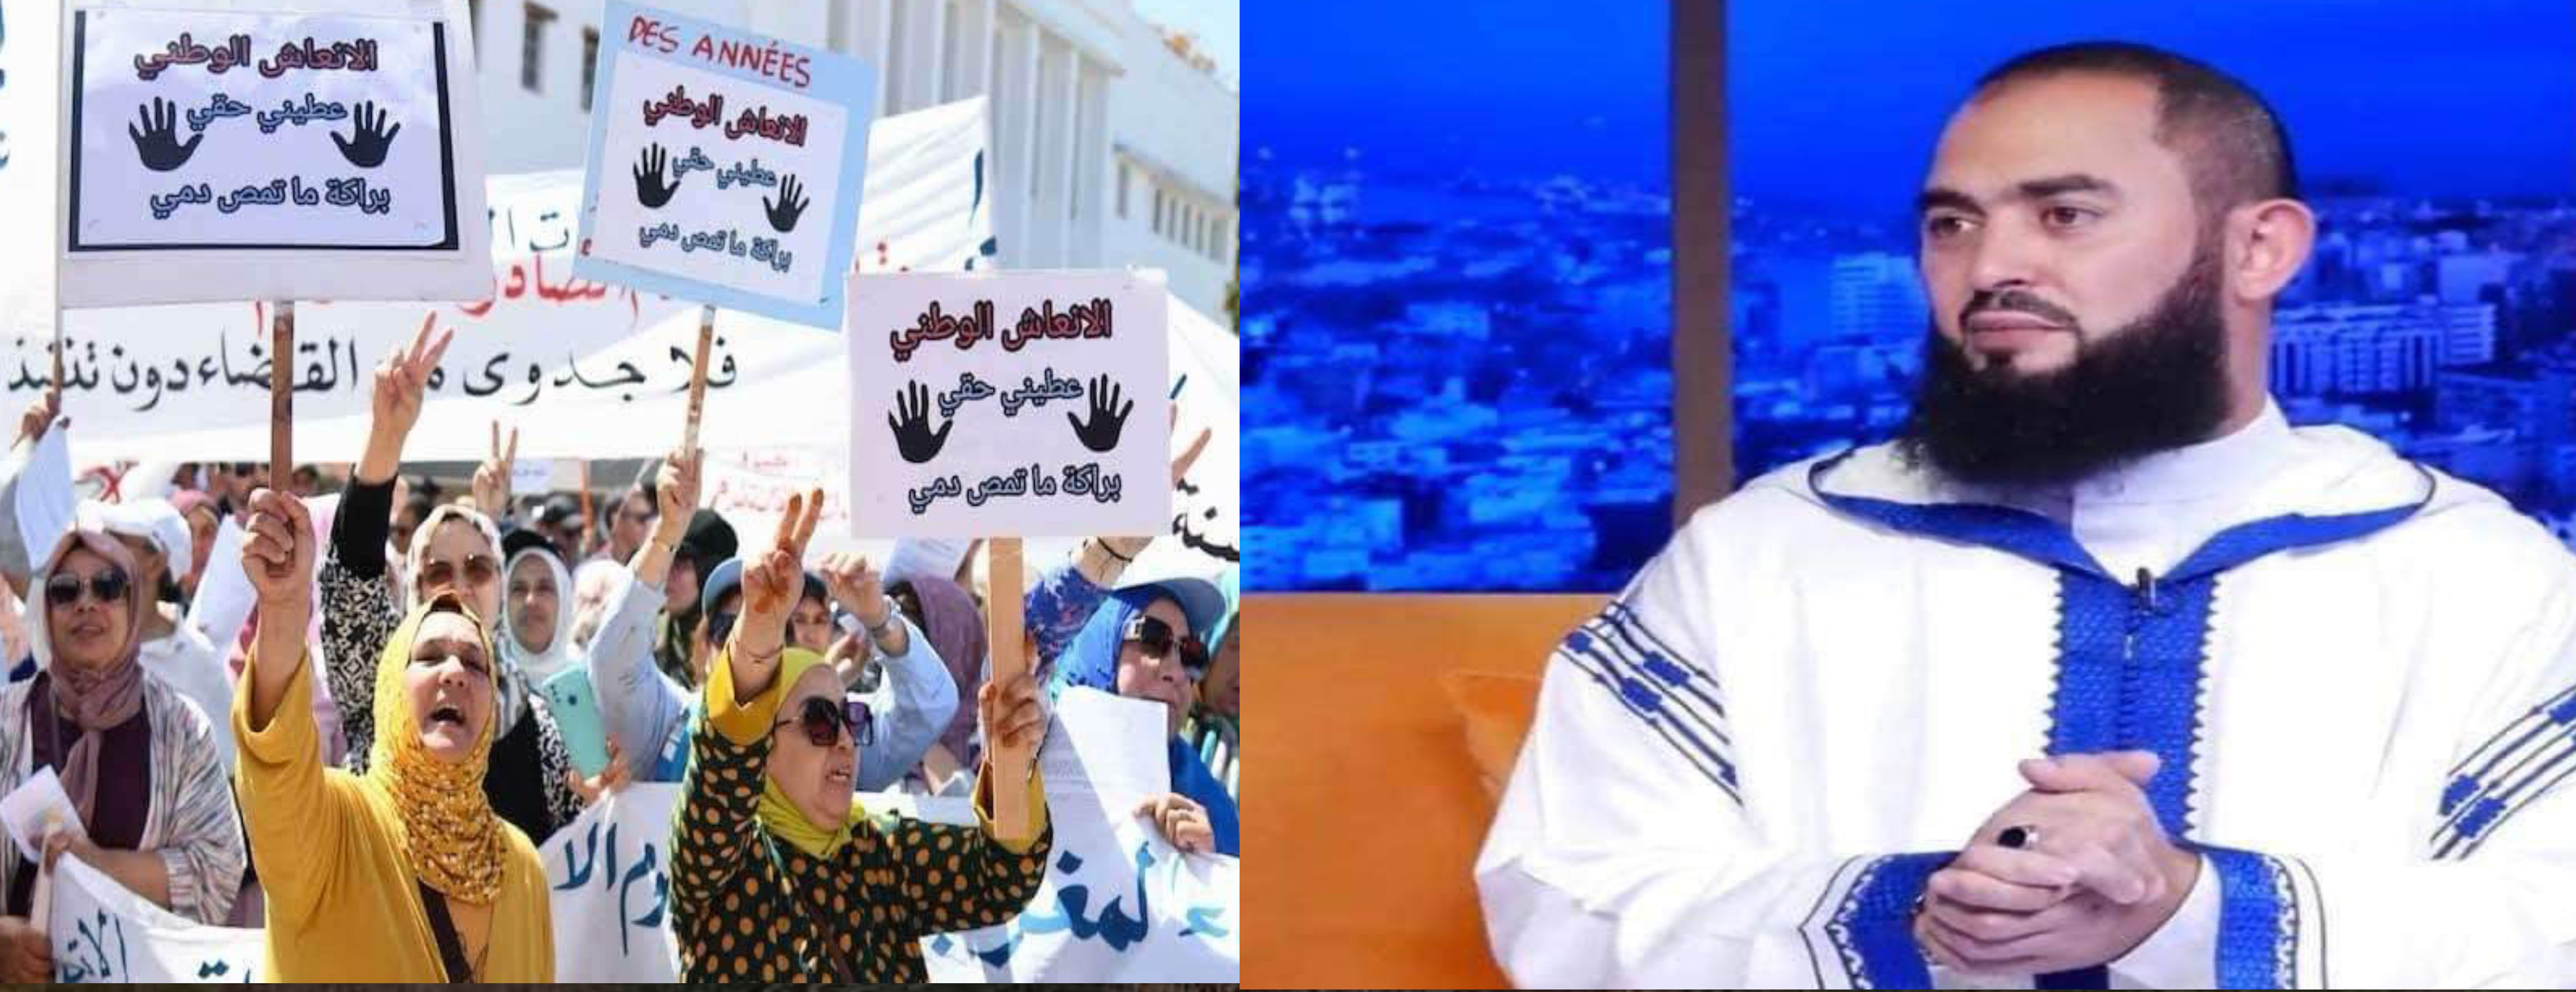 الداعية رضوان عبد السلام يهاجم الحركات النسوية ويصفها ب "الخامجة"